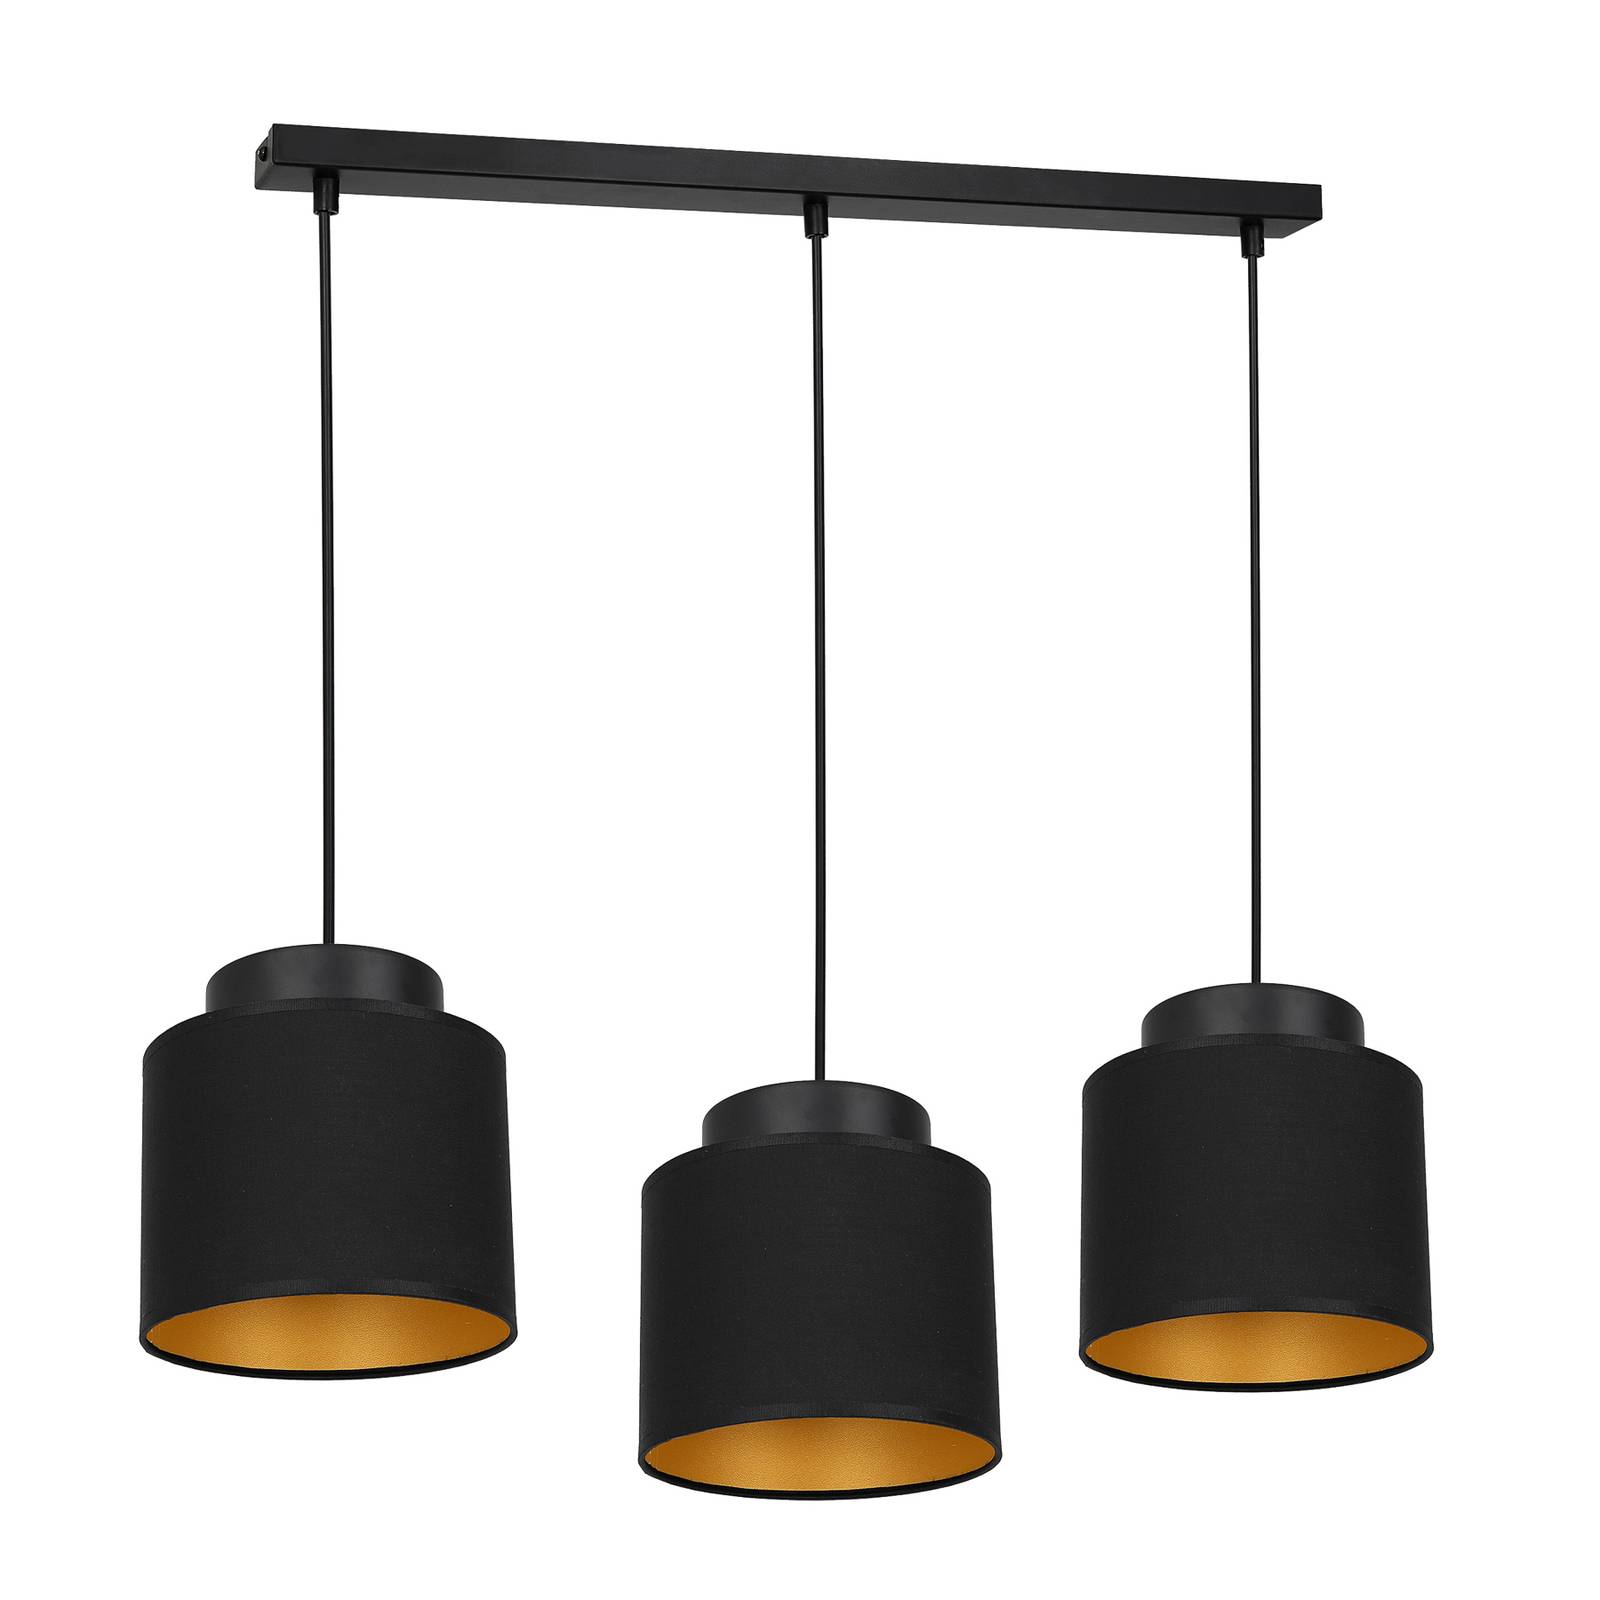 Hanglamp Soho cilindrisch zwart/goud